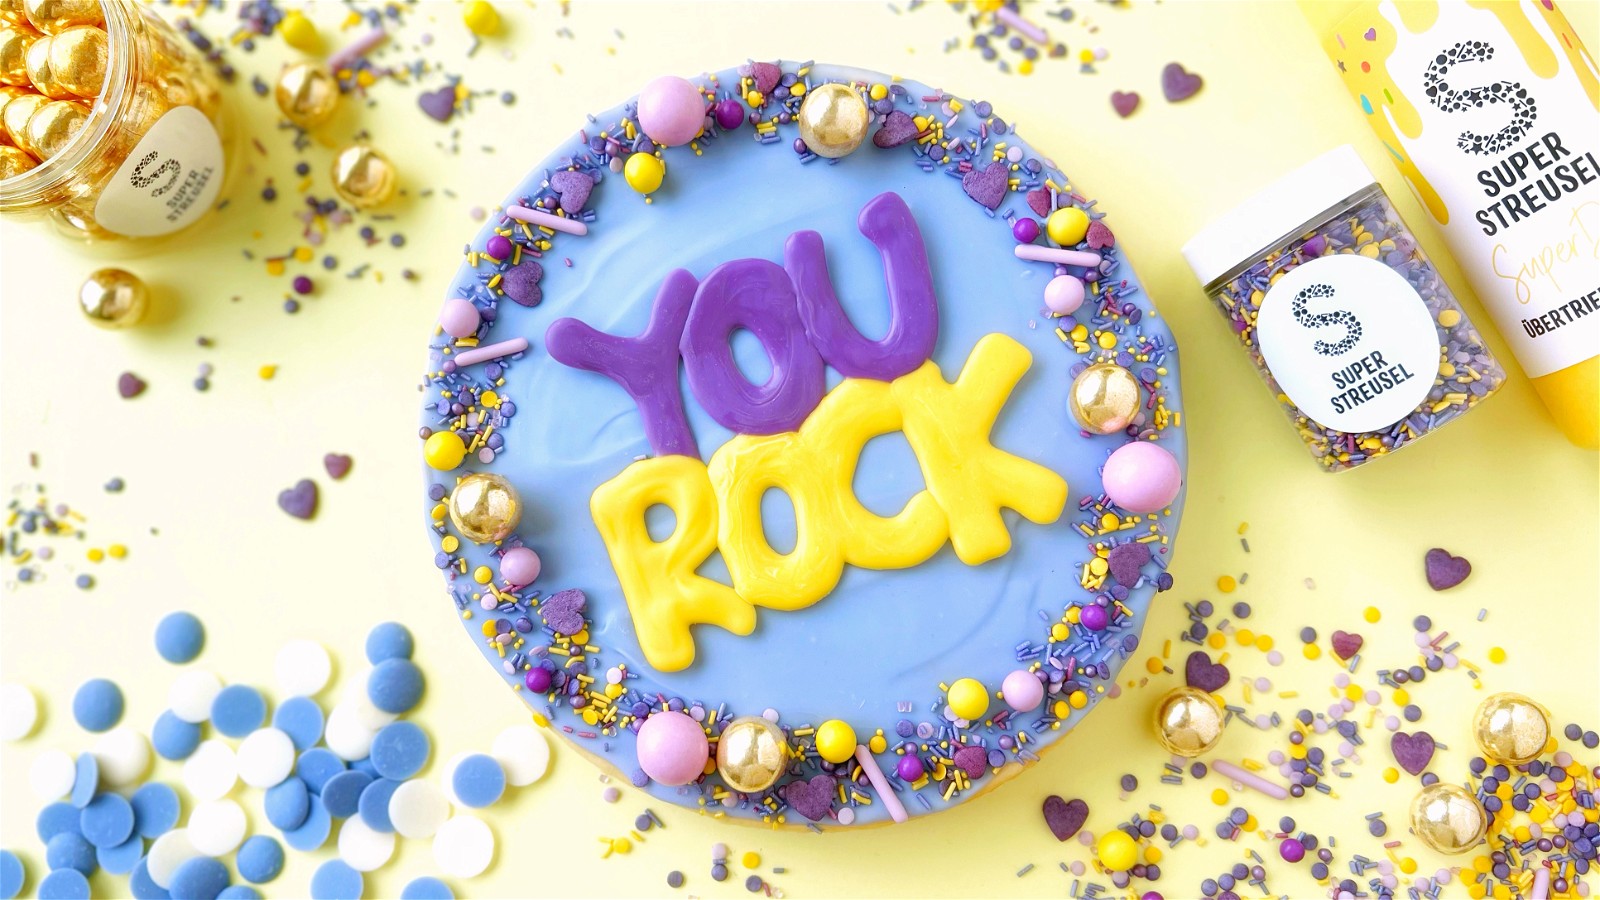 Image of “YOUROCK” Cheesecake 